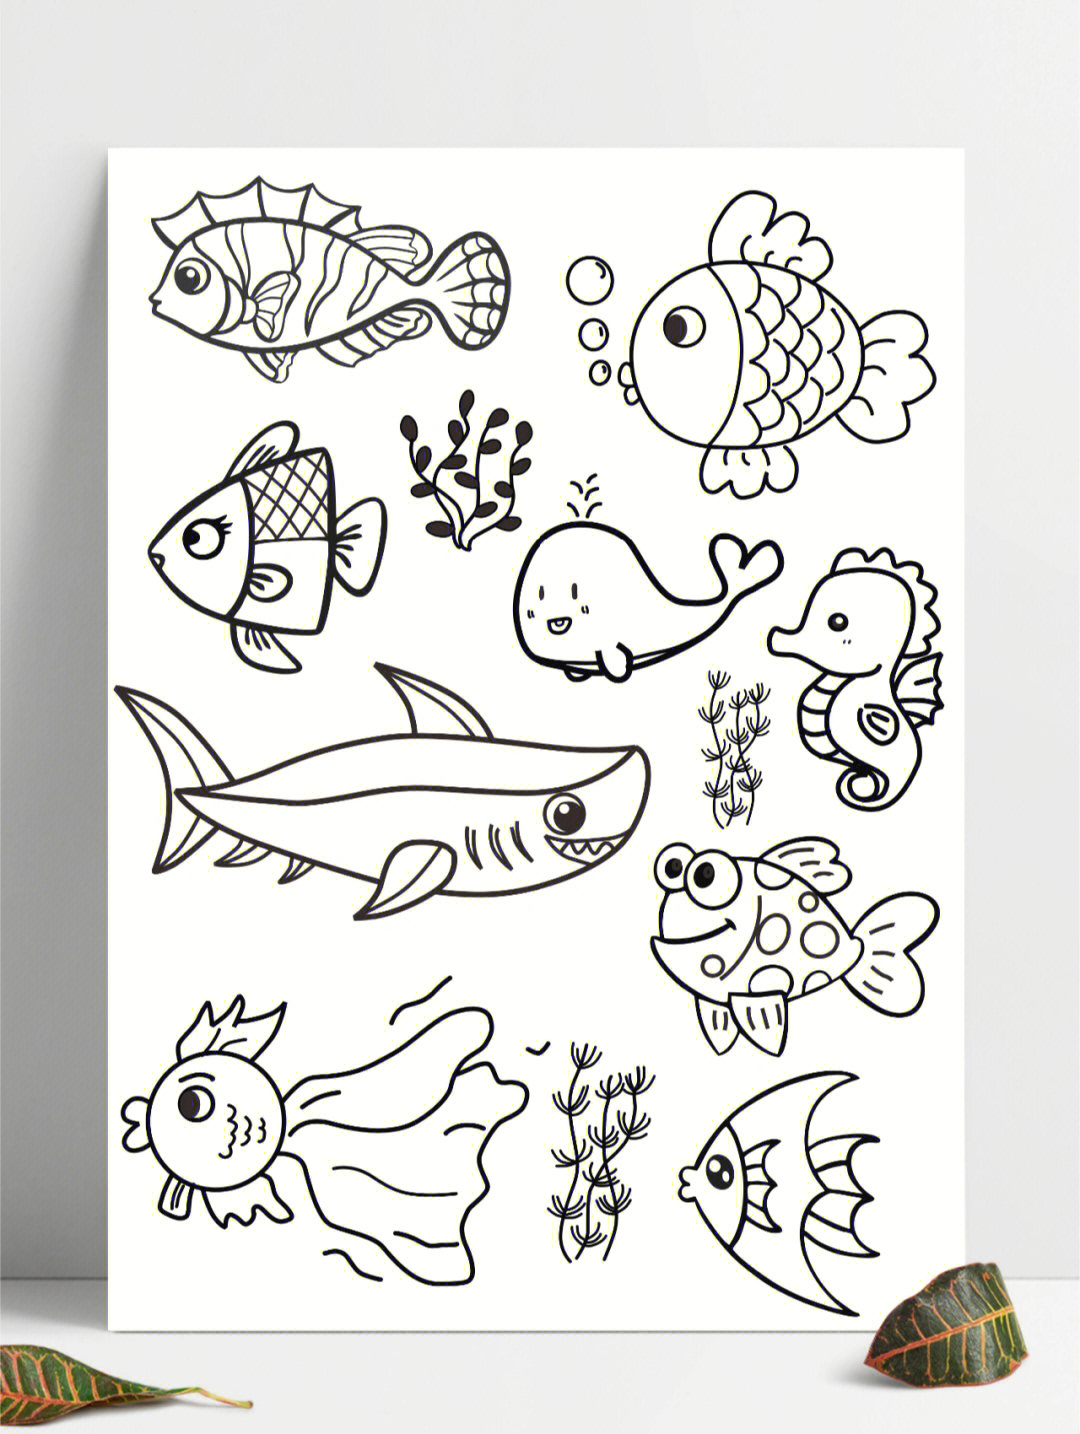 水里面的动物简笔画图片